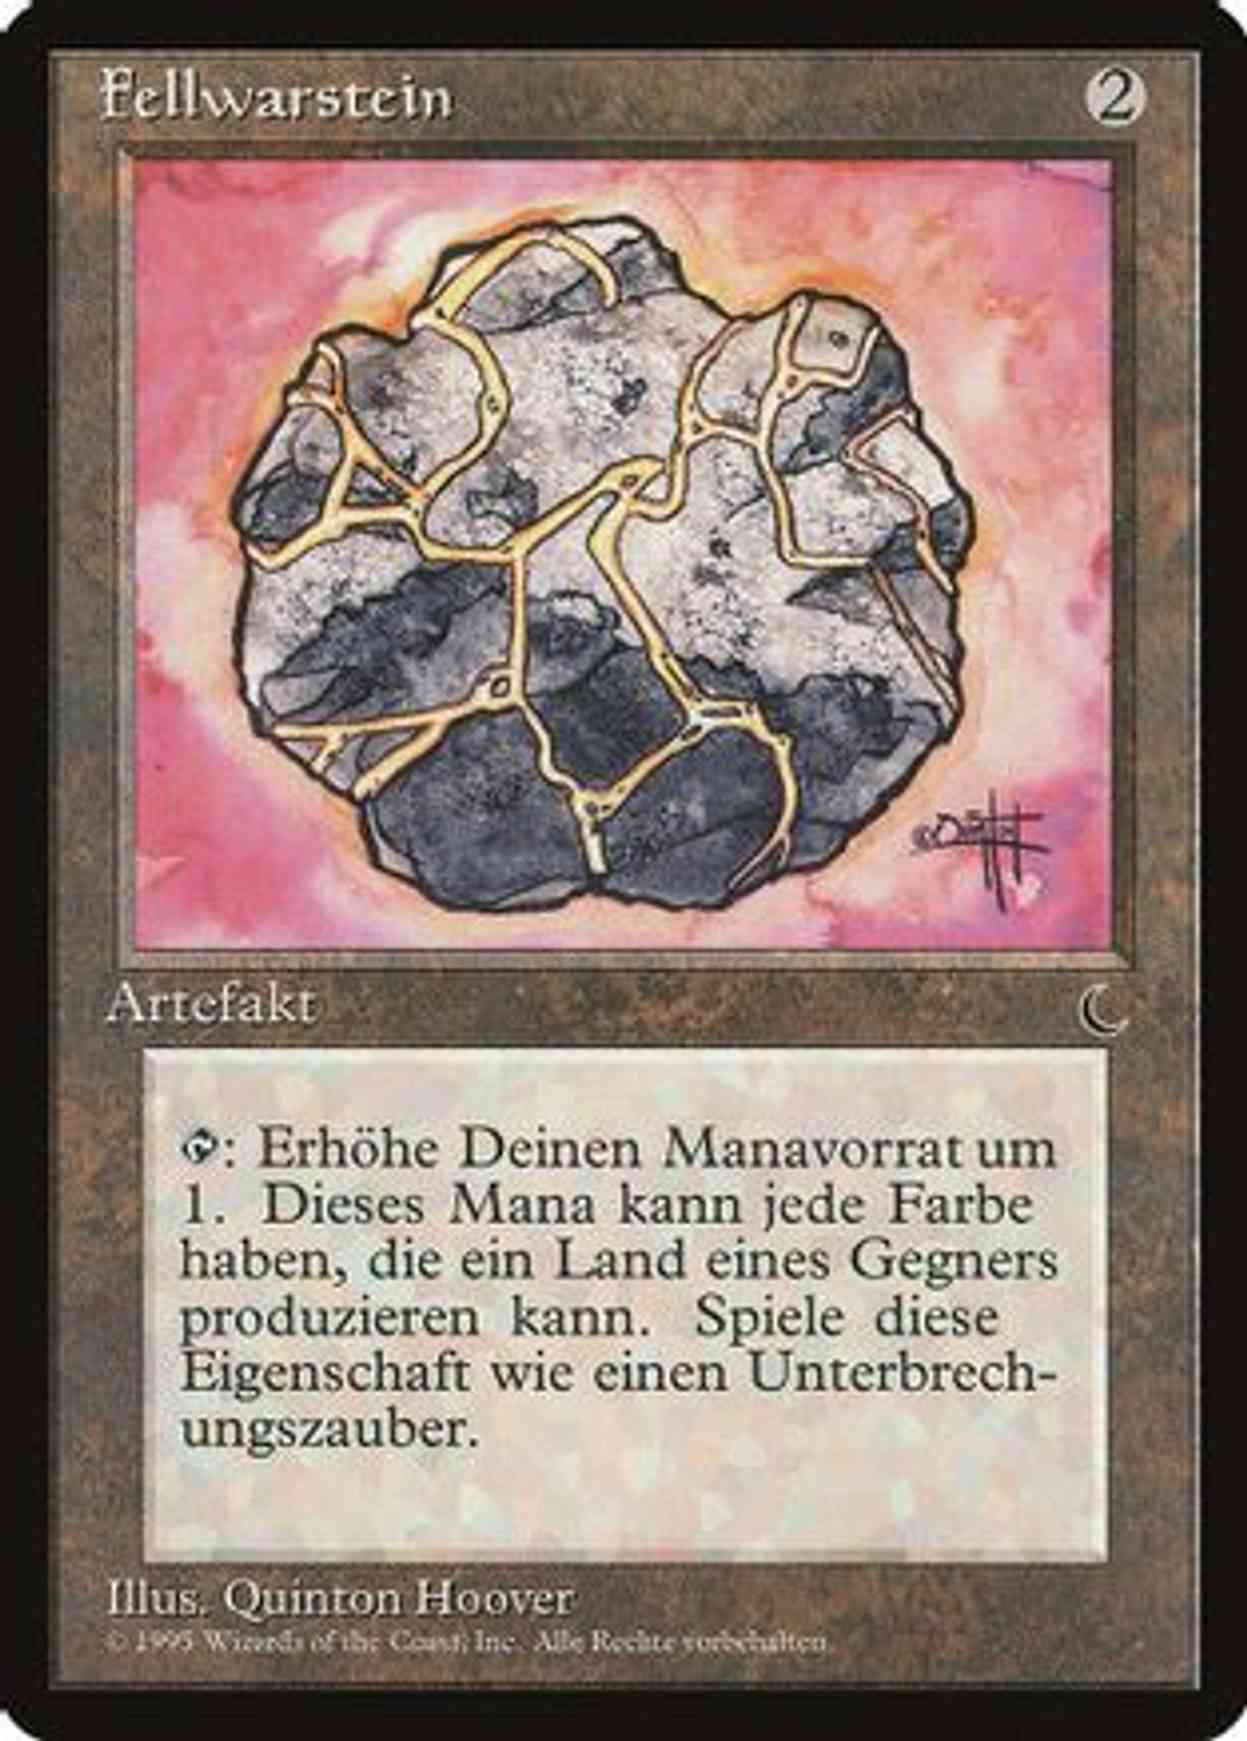 Fellwar Stone (German) - "Fellwarstein" magic card front